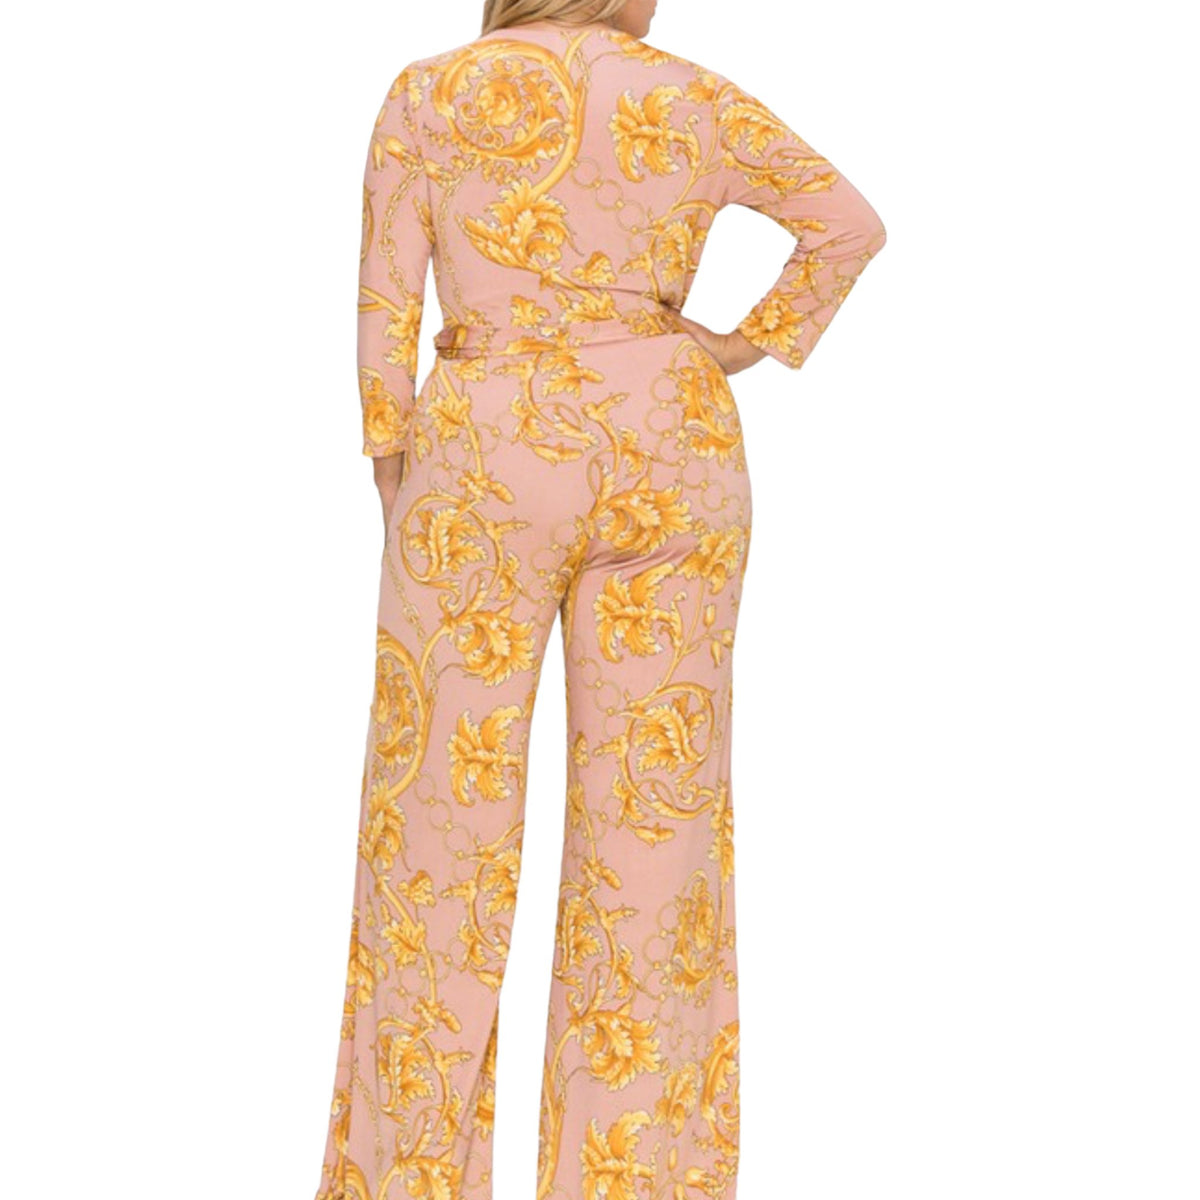 Plus Size Gold Chain Faux Wrap Jumpsuit Dress - Fabulously Dressed Boutique 